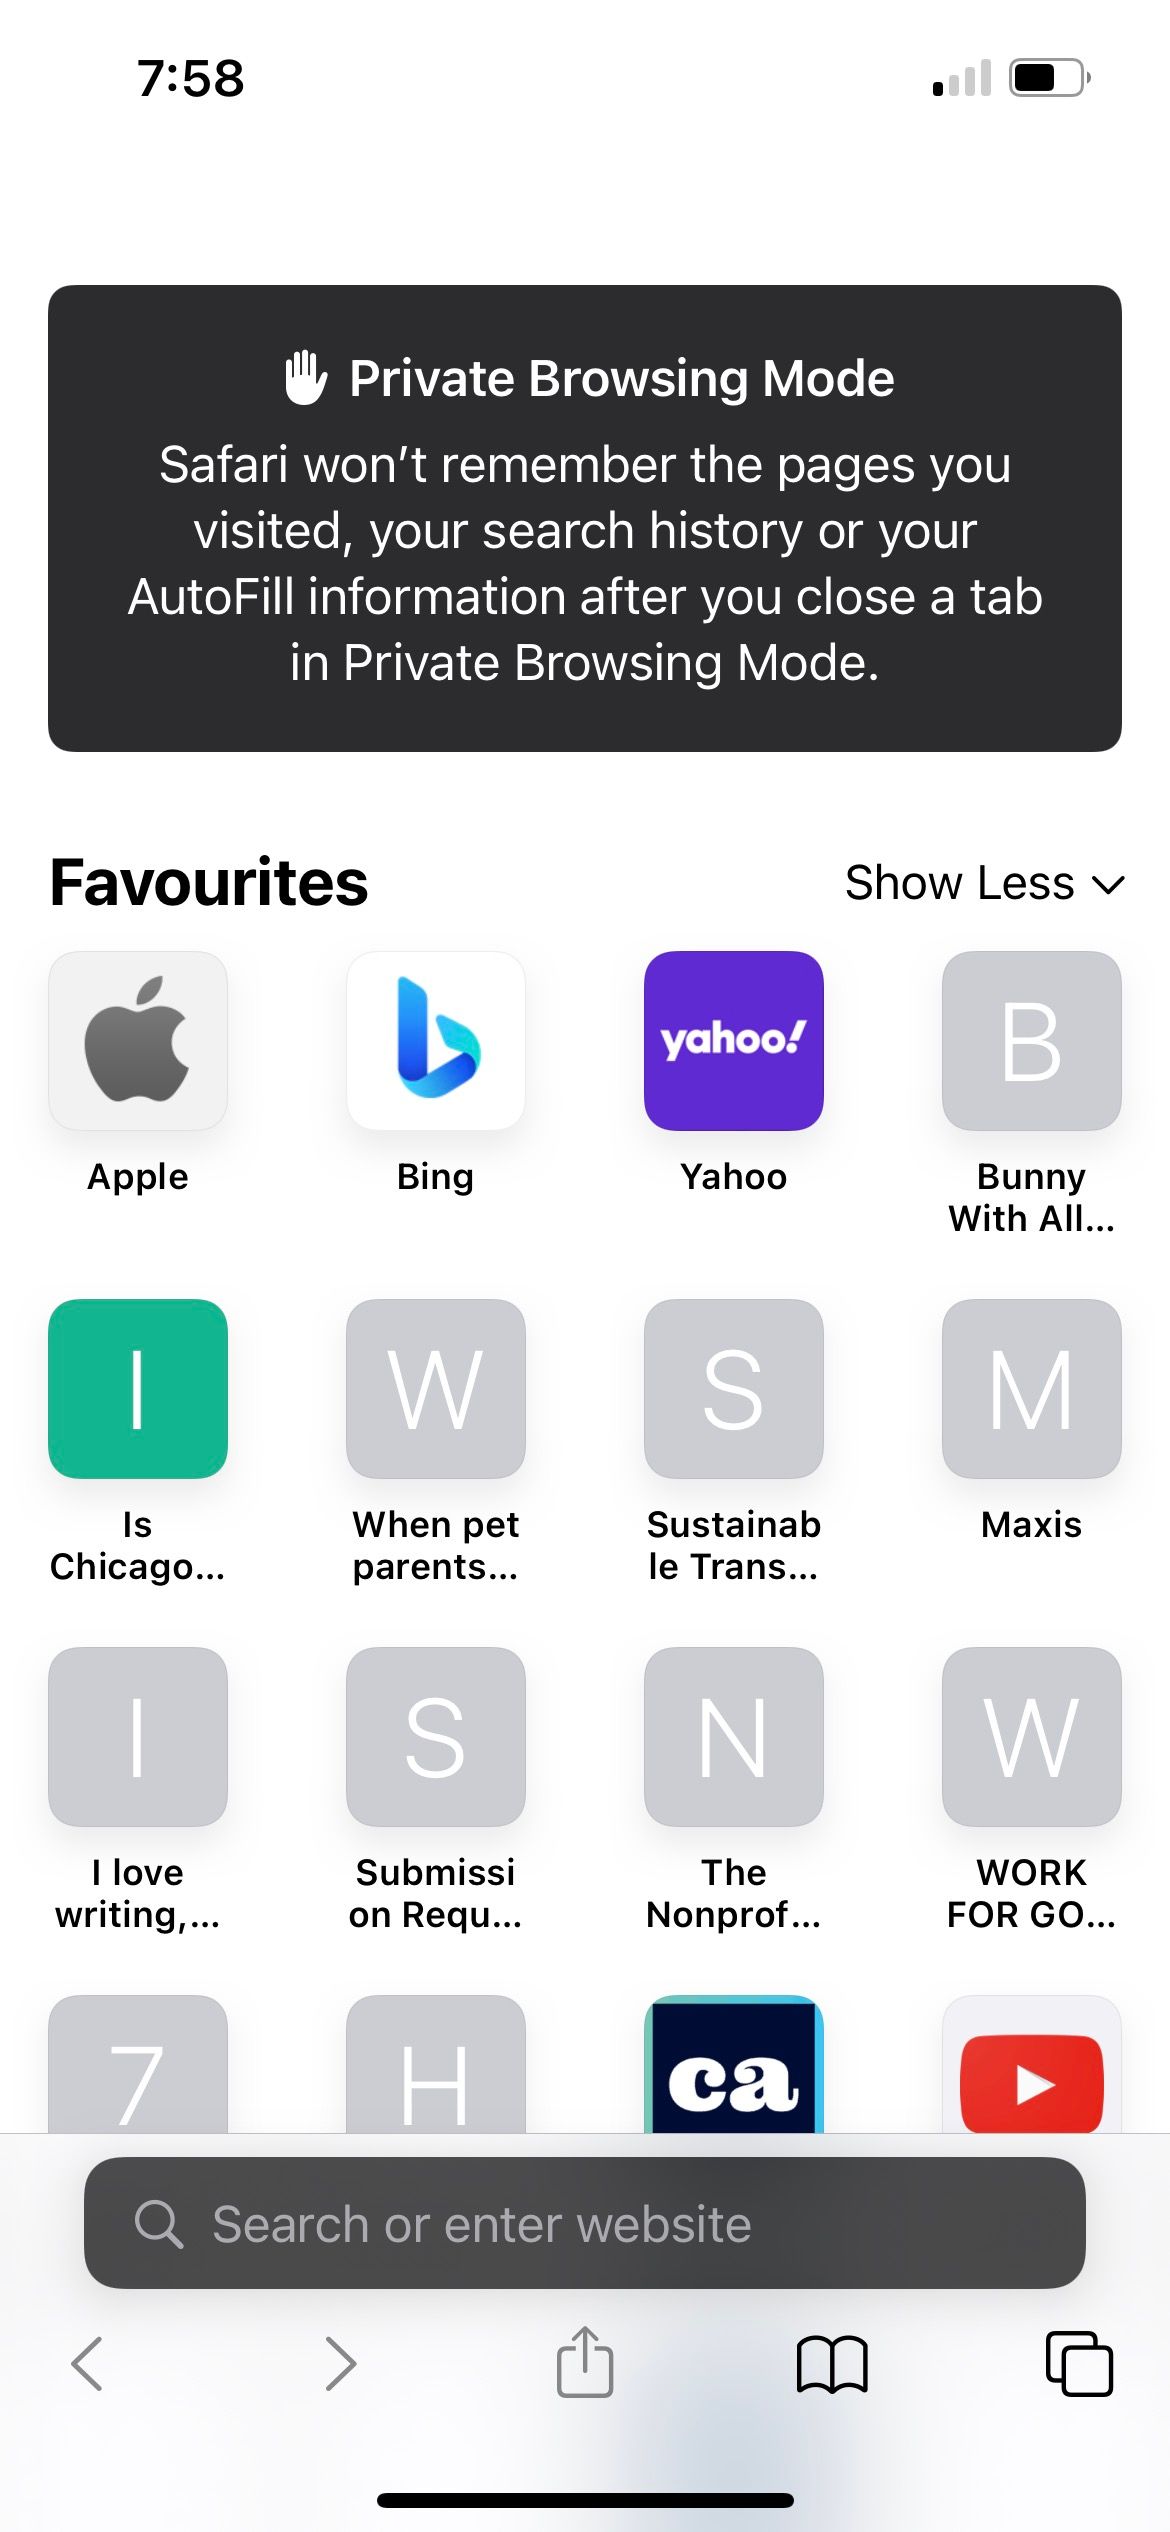 private browsing mode in iphone safari app